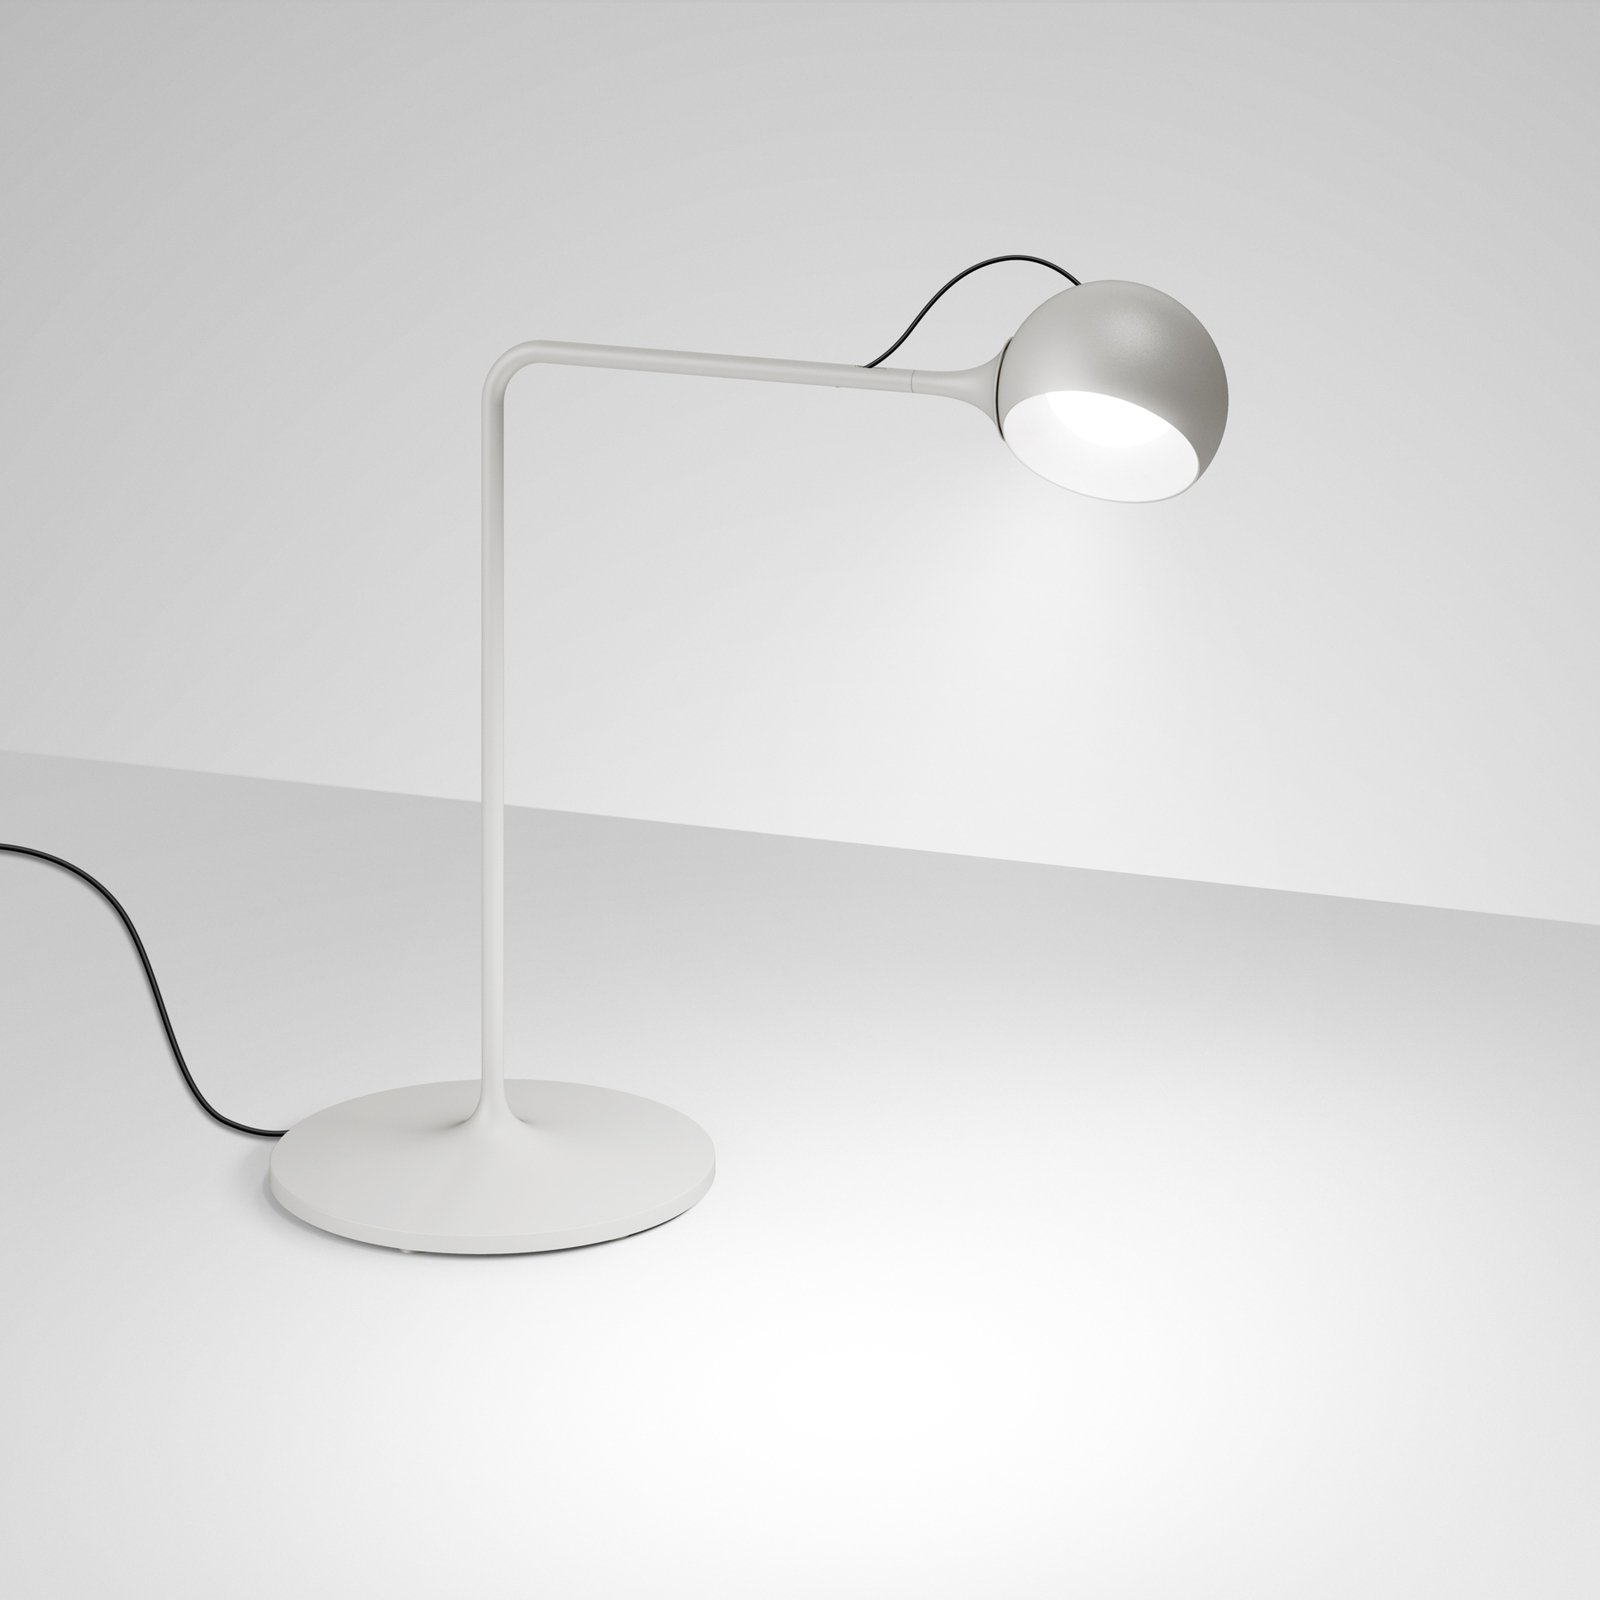 Artemide Ixa stolová LED lampa, bielo-sivá